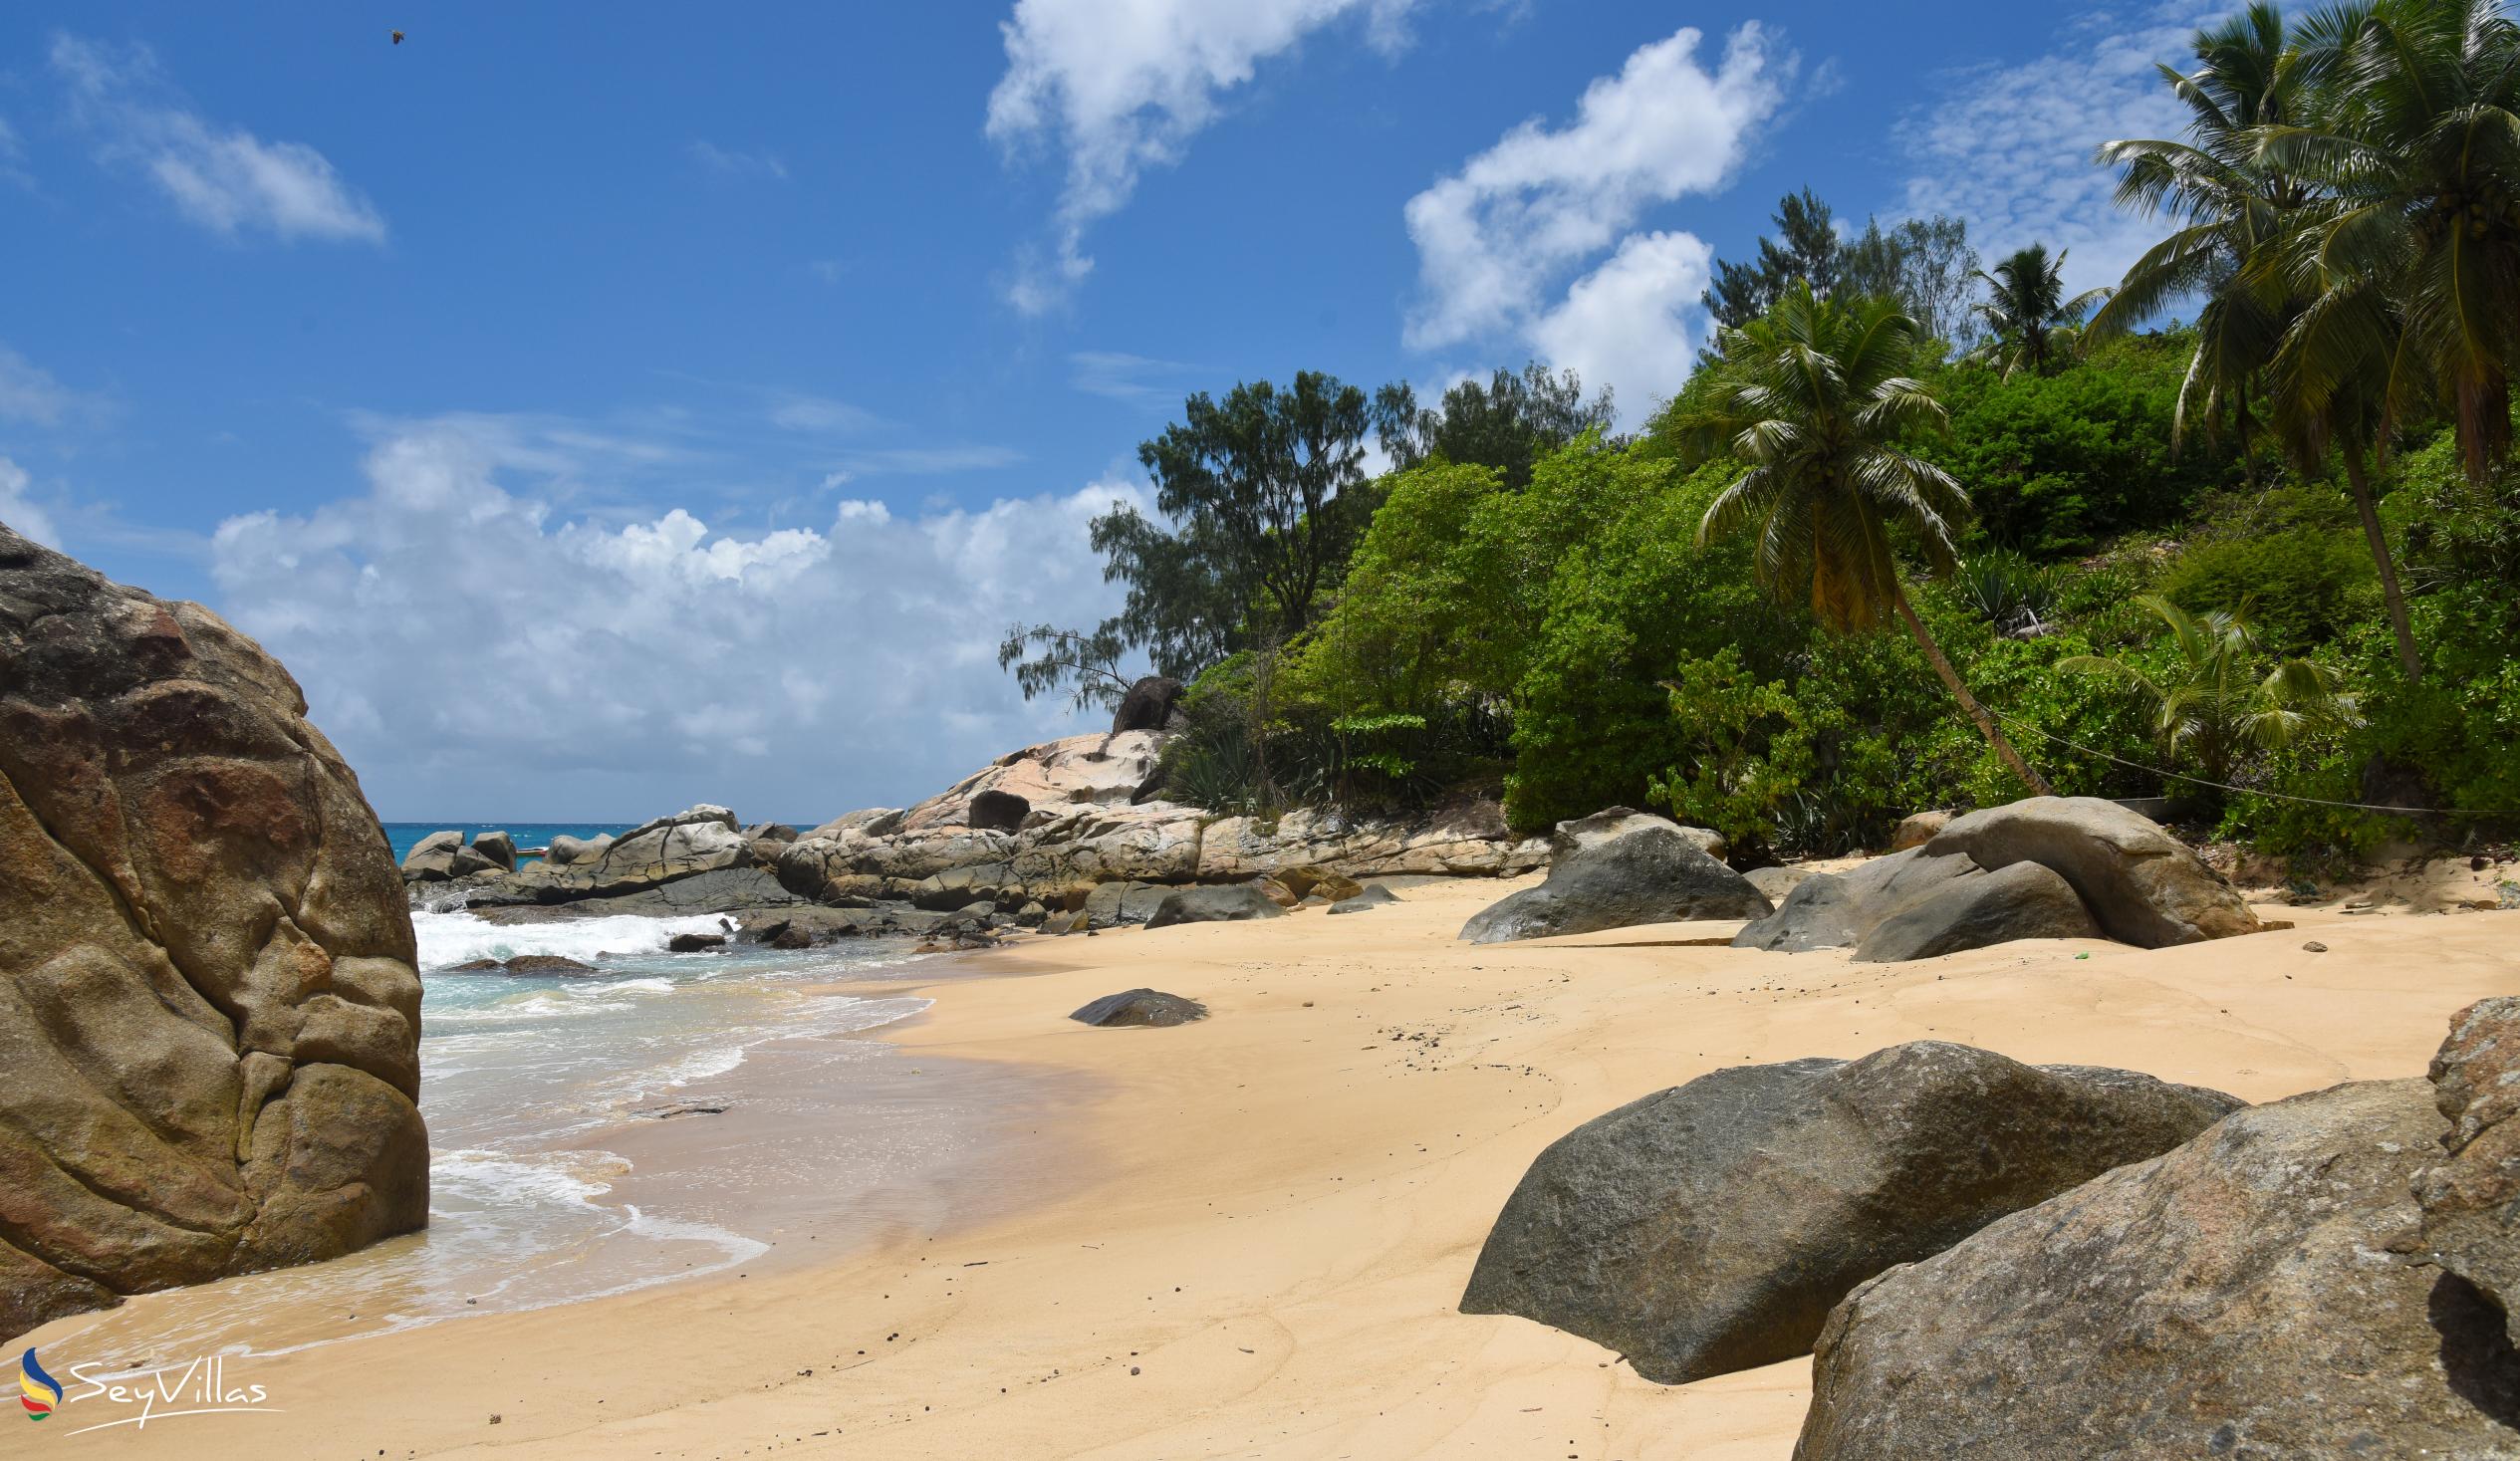 Photo 4: Anse Machabée - Mahé (Seychelles)